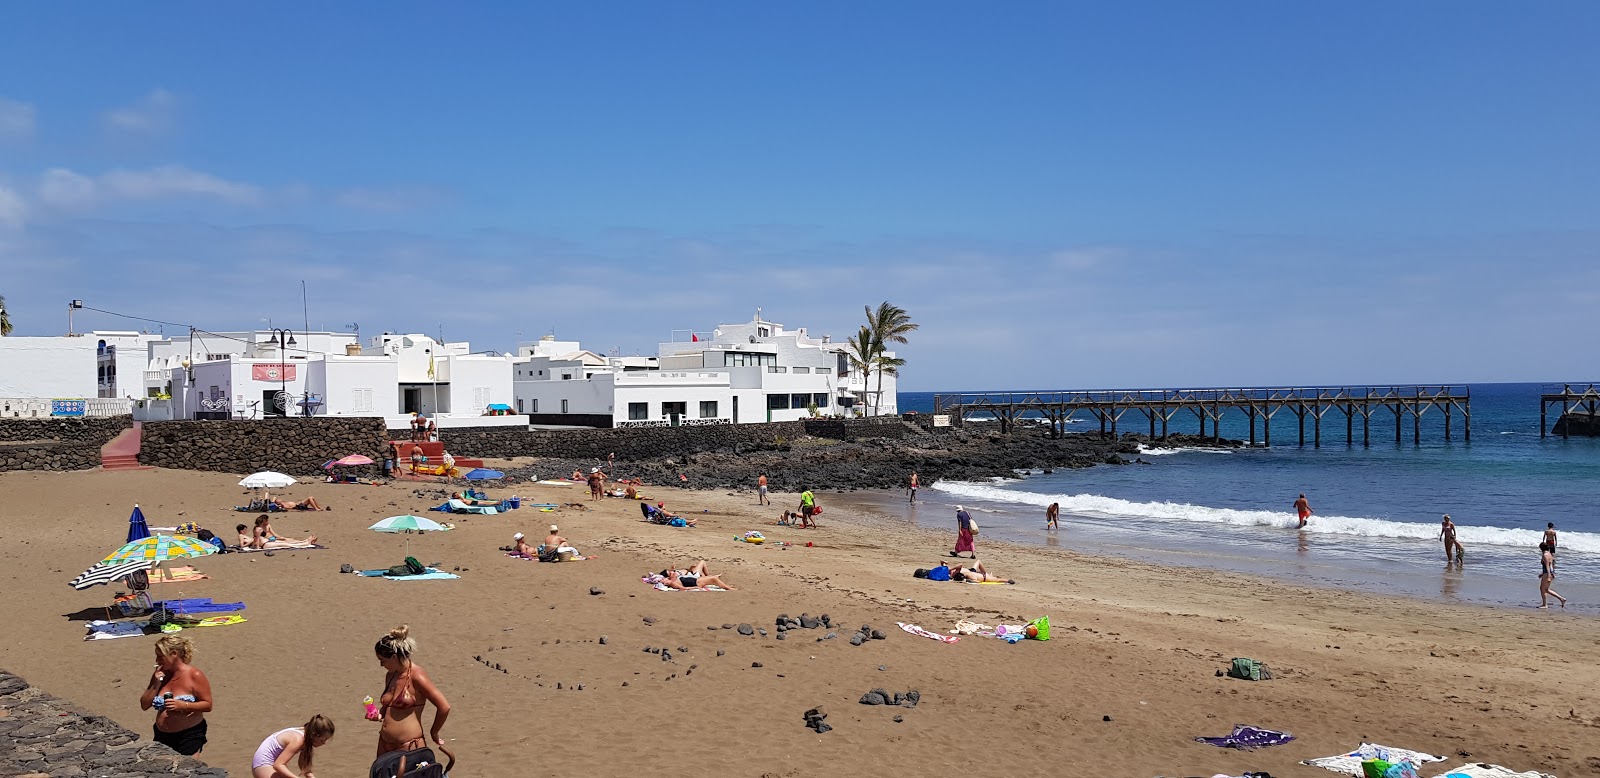 Fotografija Playa de la Garita nahaja se v naravnem okolju